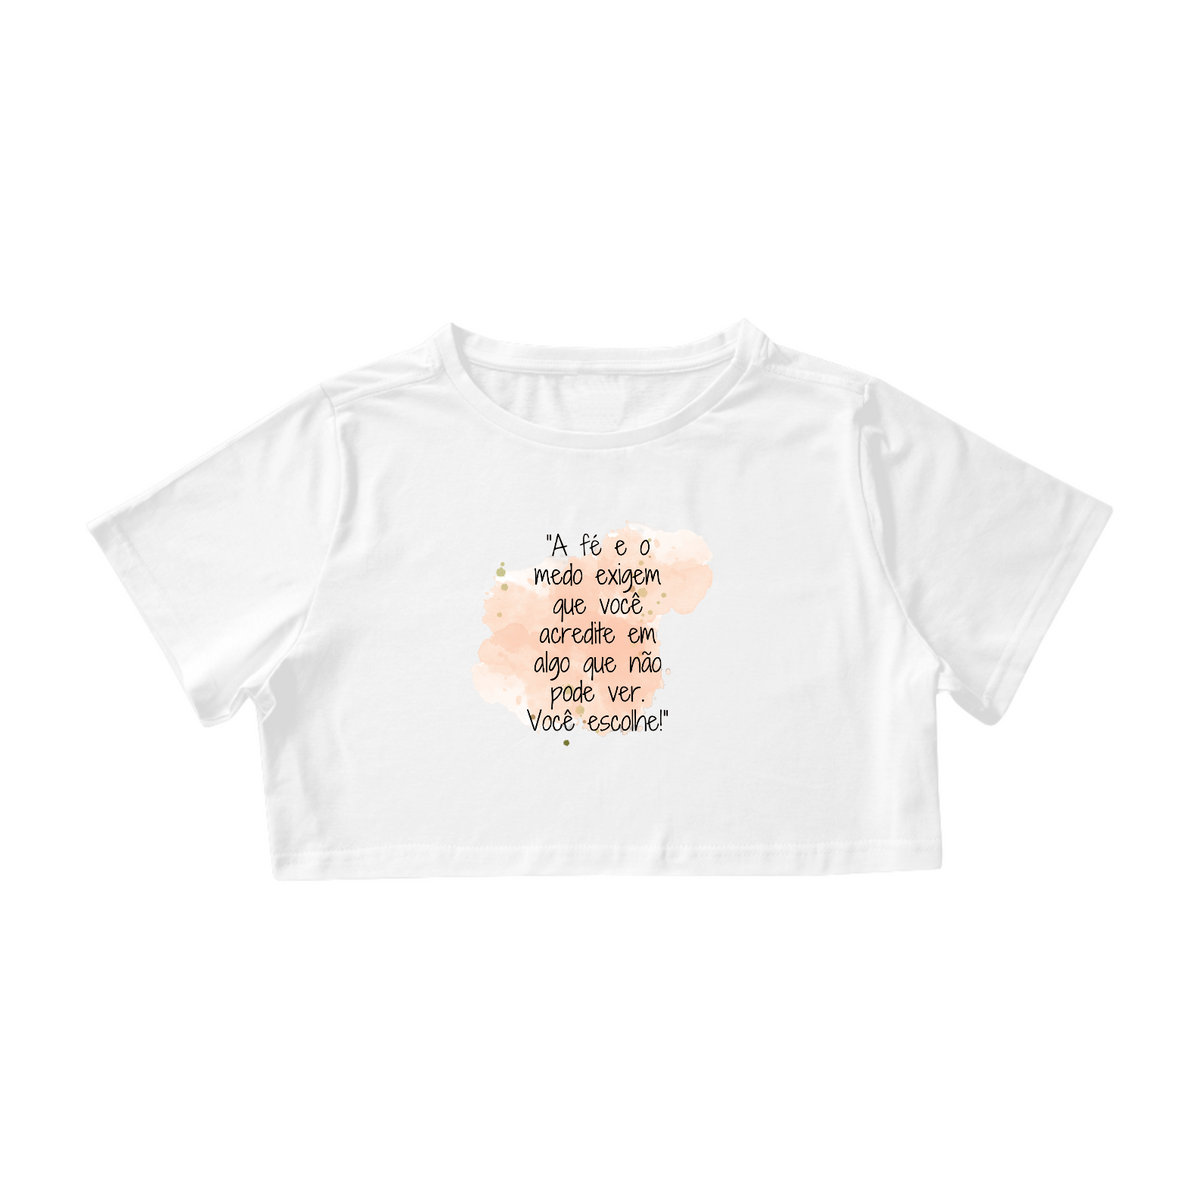 Nome do produto: Camisa Cropped  “A fé e o medo exigem que você acredite em algo que não pode ver. Você escolhe!”